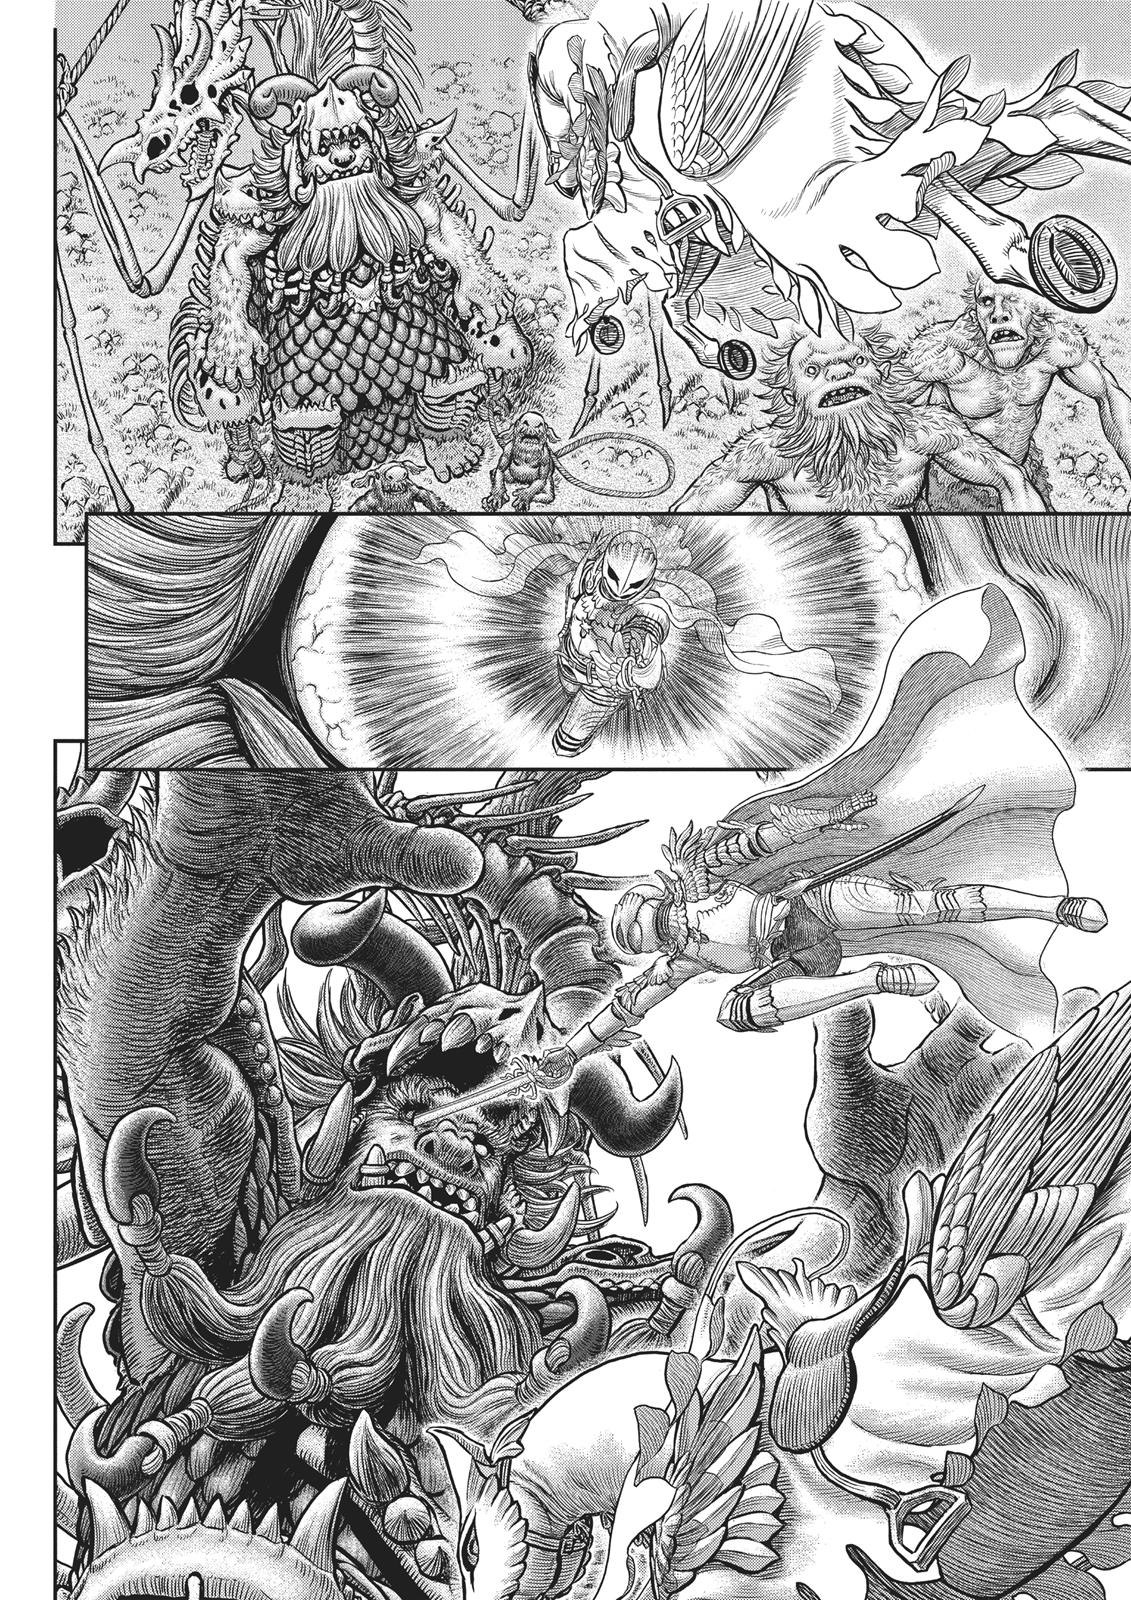 Berserk Manga Chapter 356 image 19